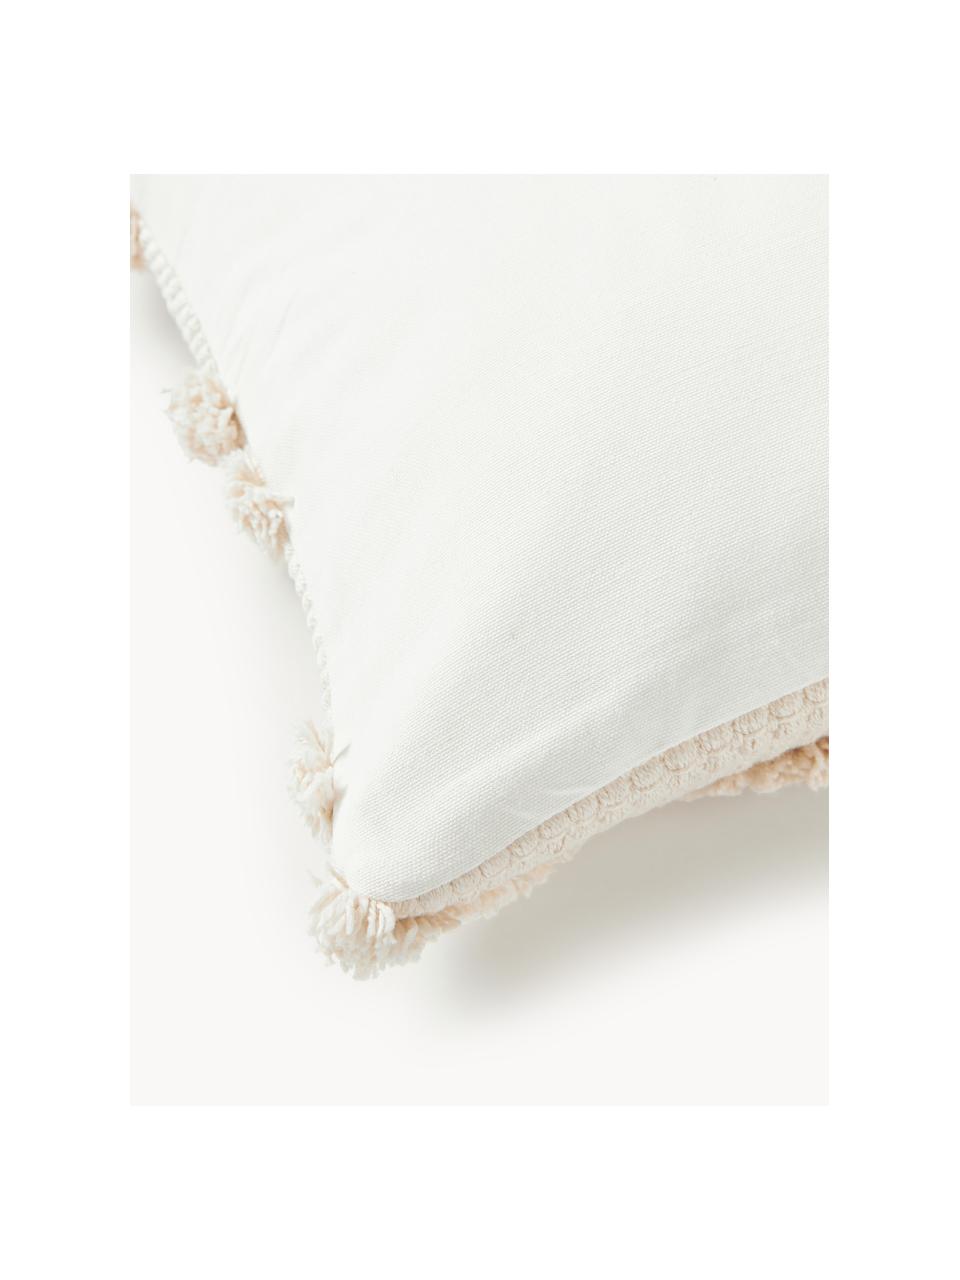 Kissenhülle Akesha mit getuftetem Zickzack-Muster, Off White, B 45 x L 45 cm